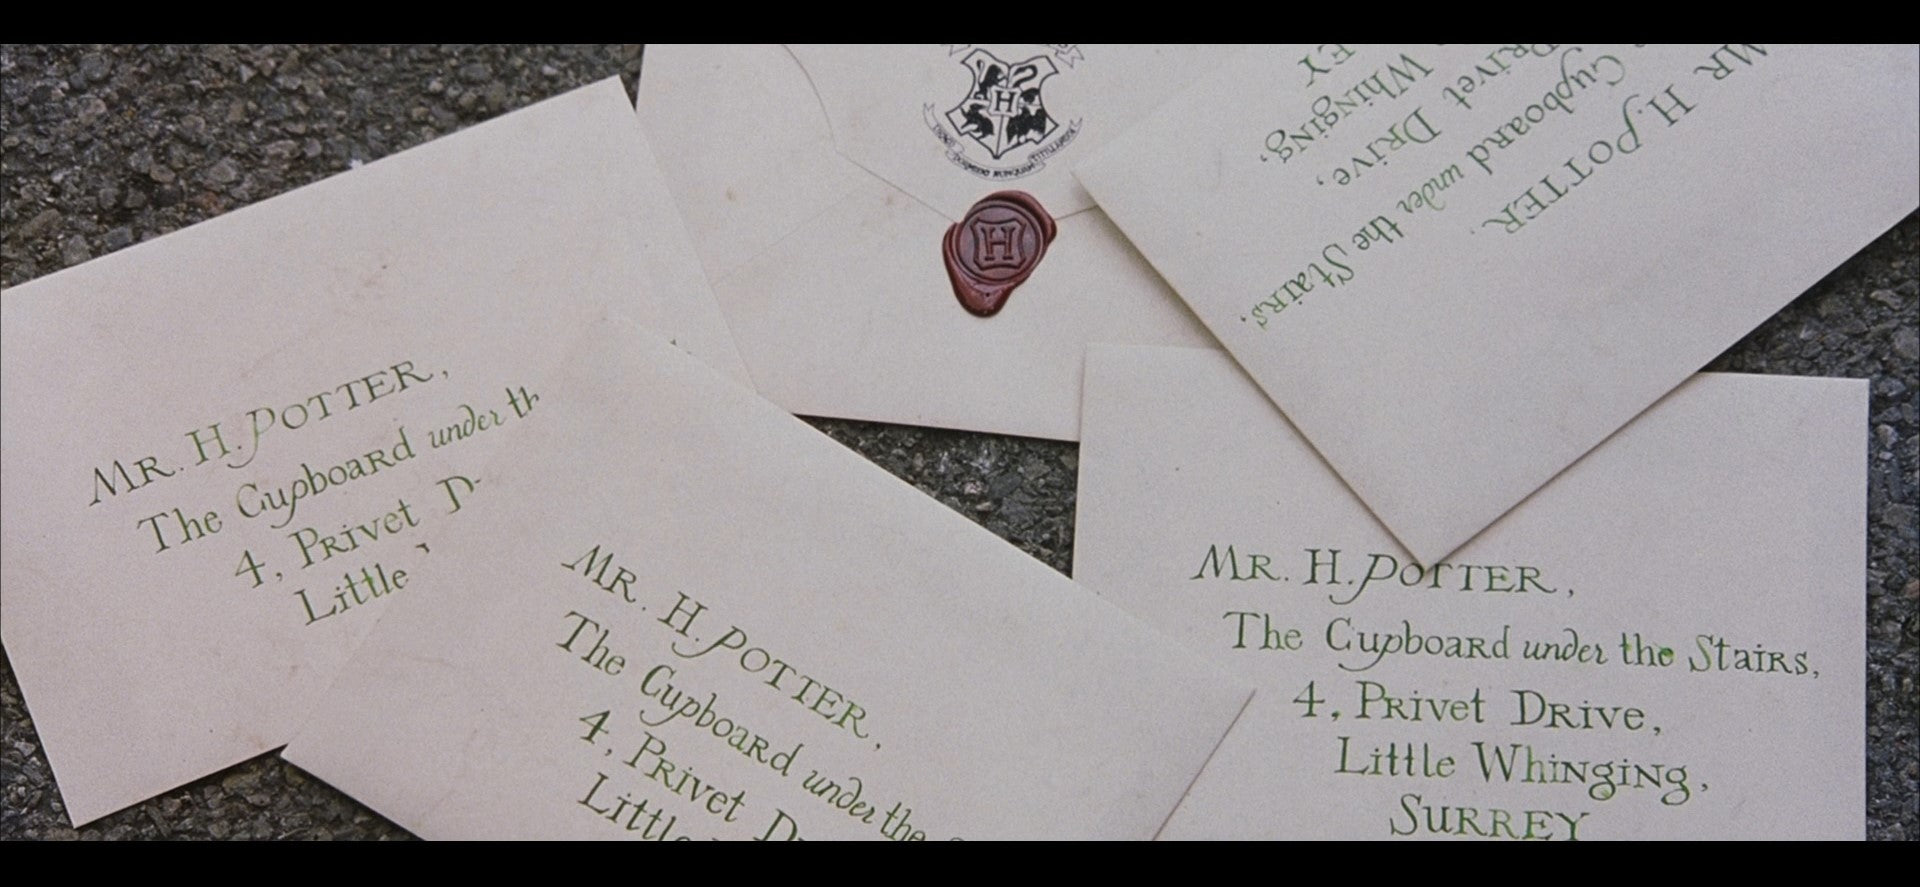 Hogwarts Acceptance Letter  2001, original production made letter